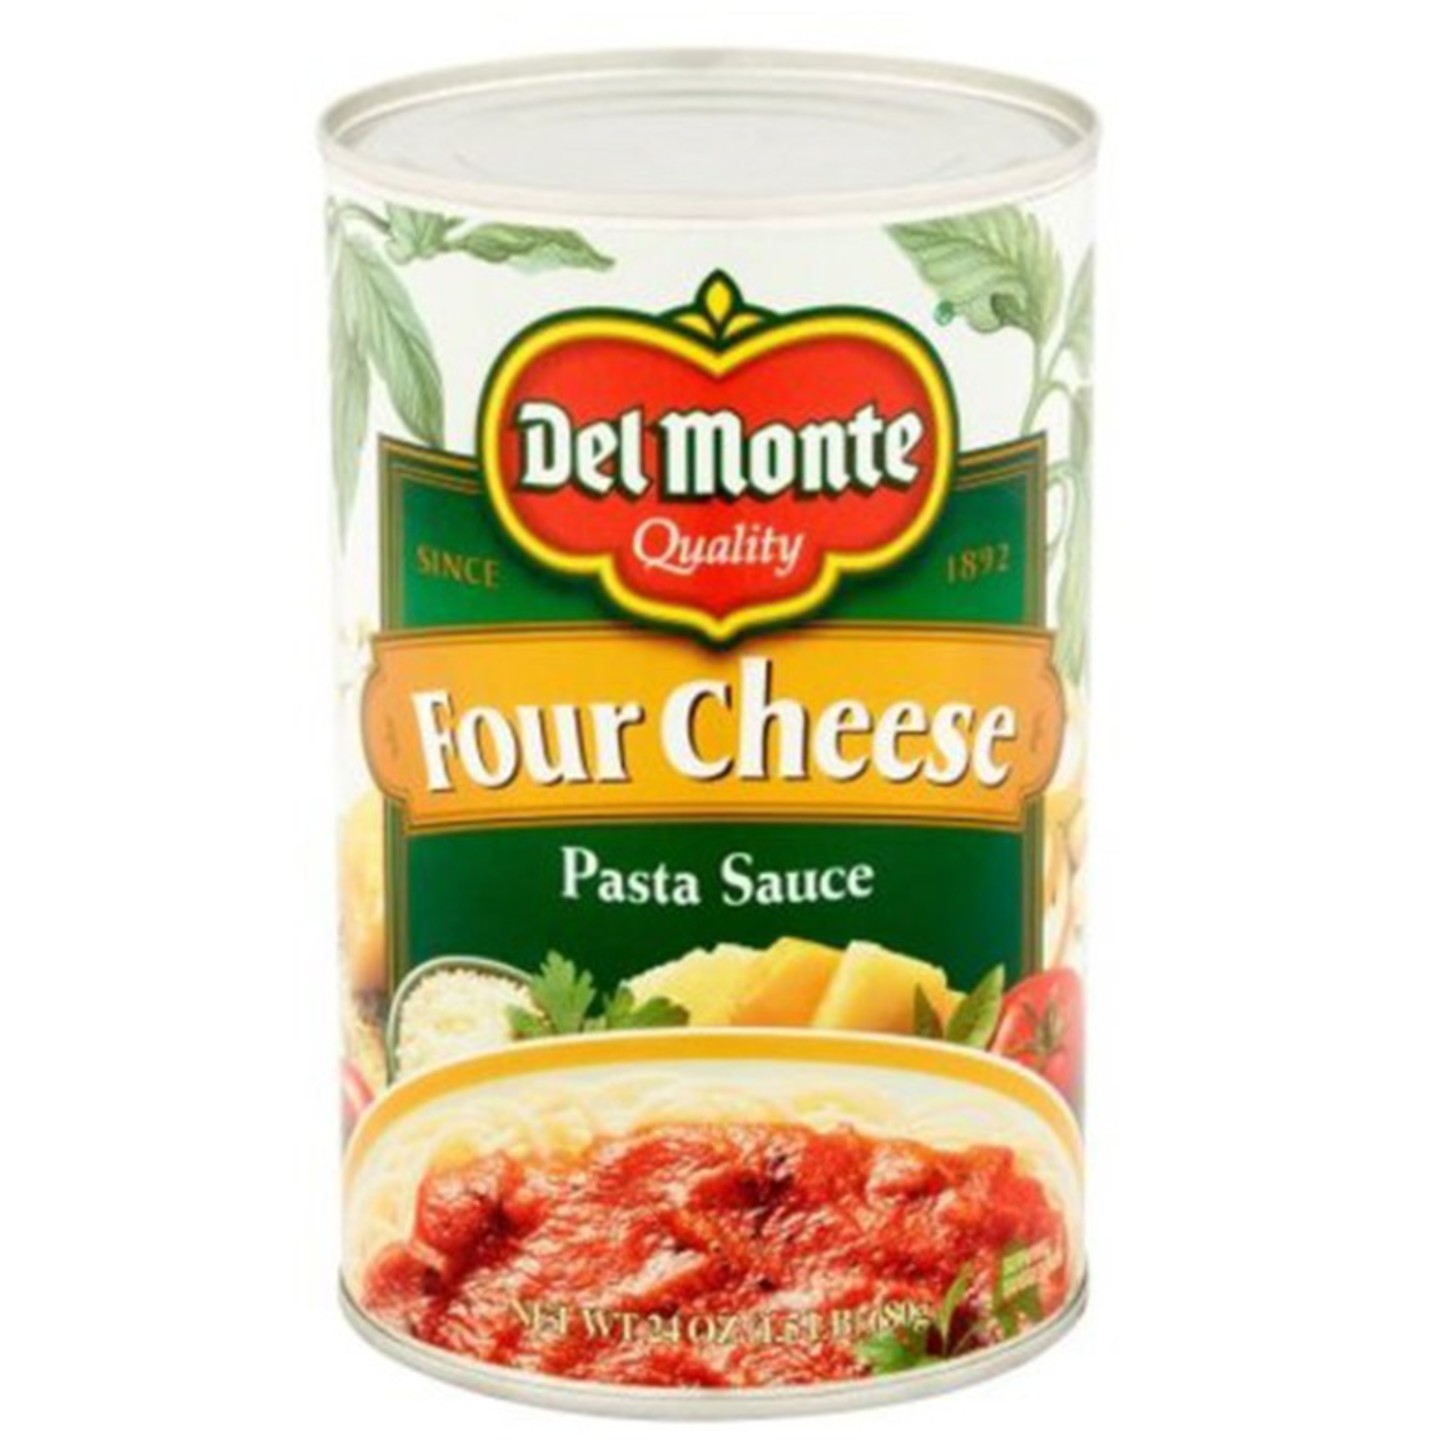 Del Monte Sauce 680g